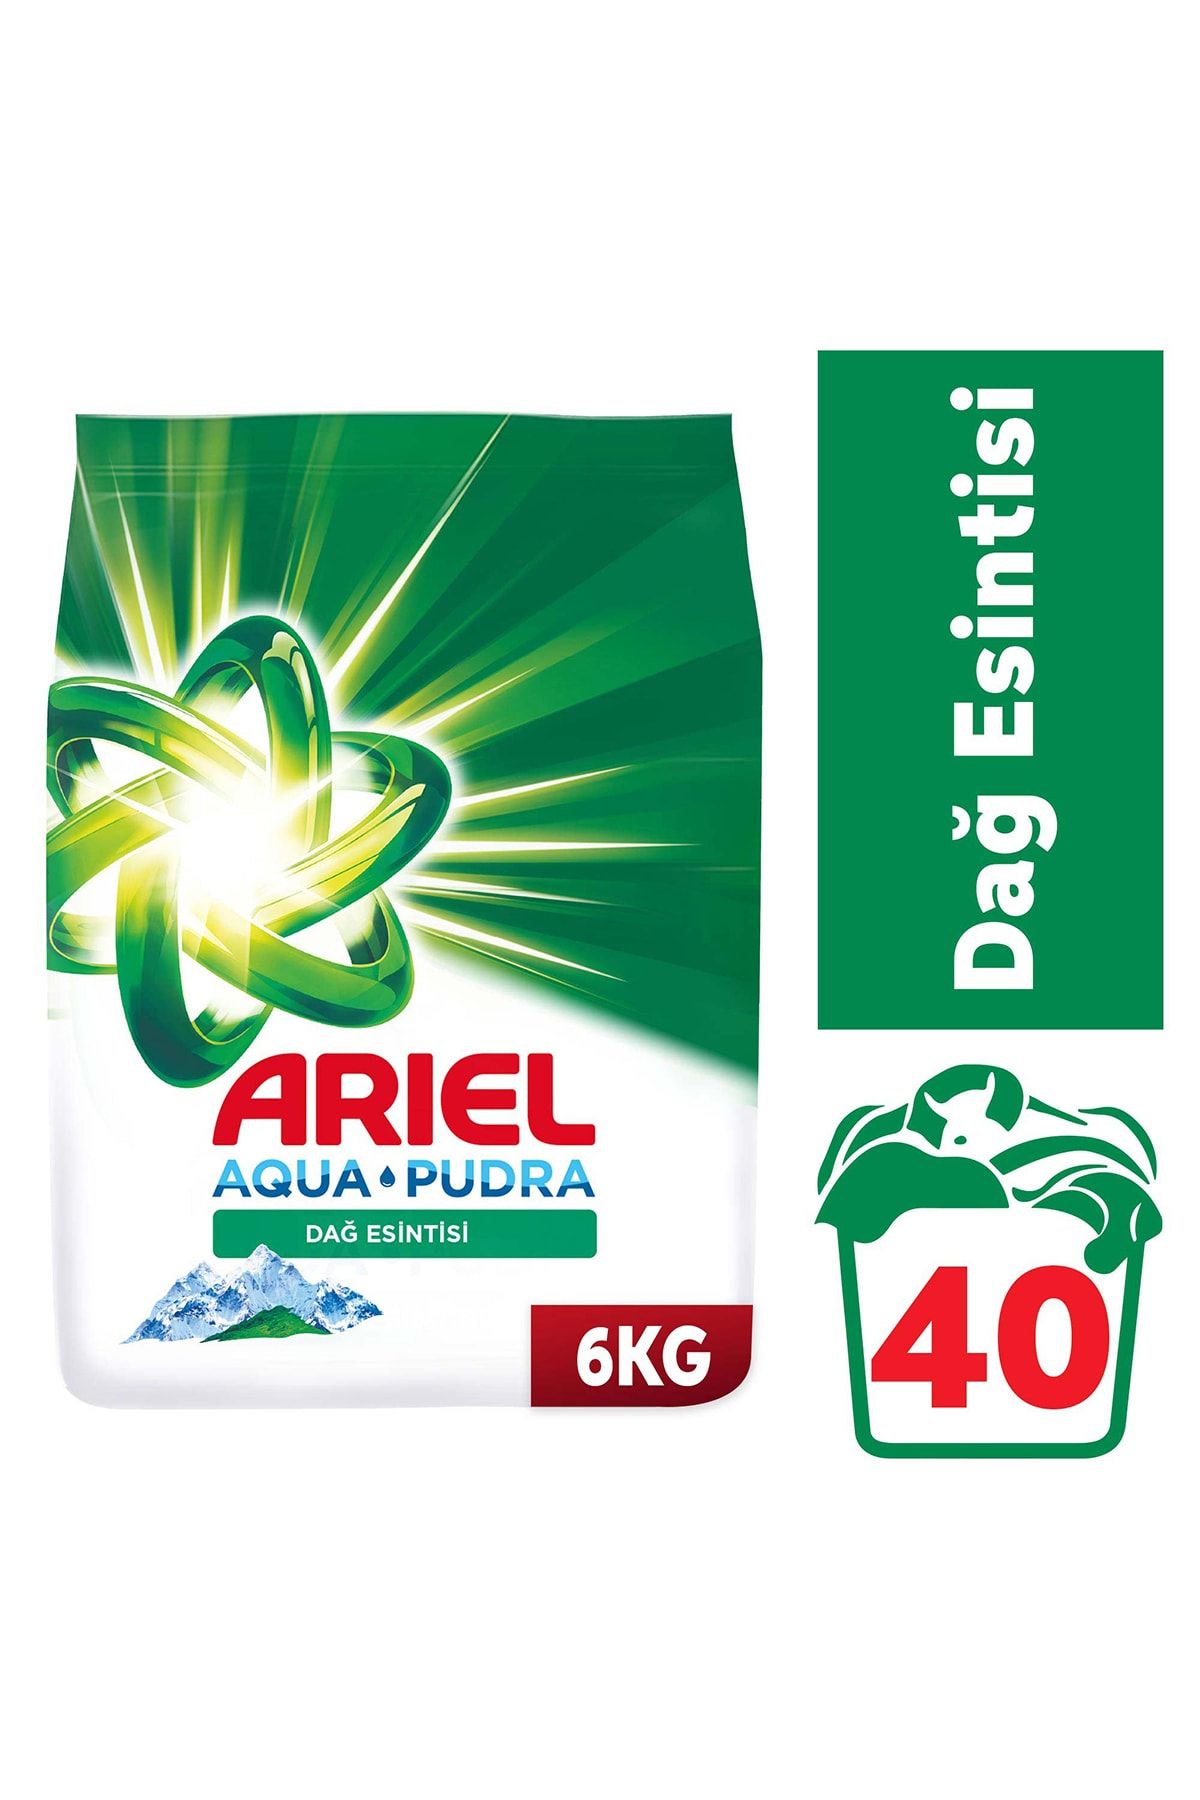 Ariel Dağ Esintisi 6 kg Aquapudra Toz Çamaşır Deterjanı